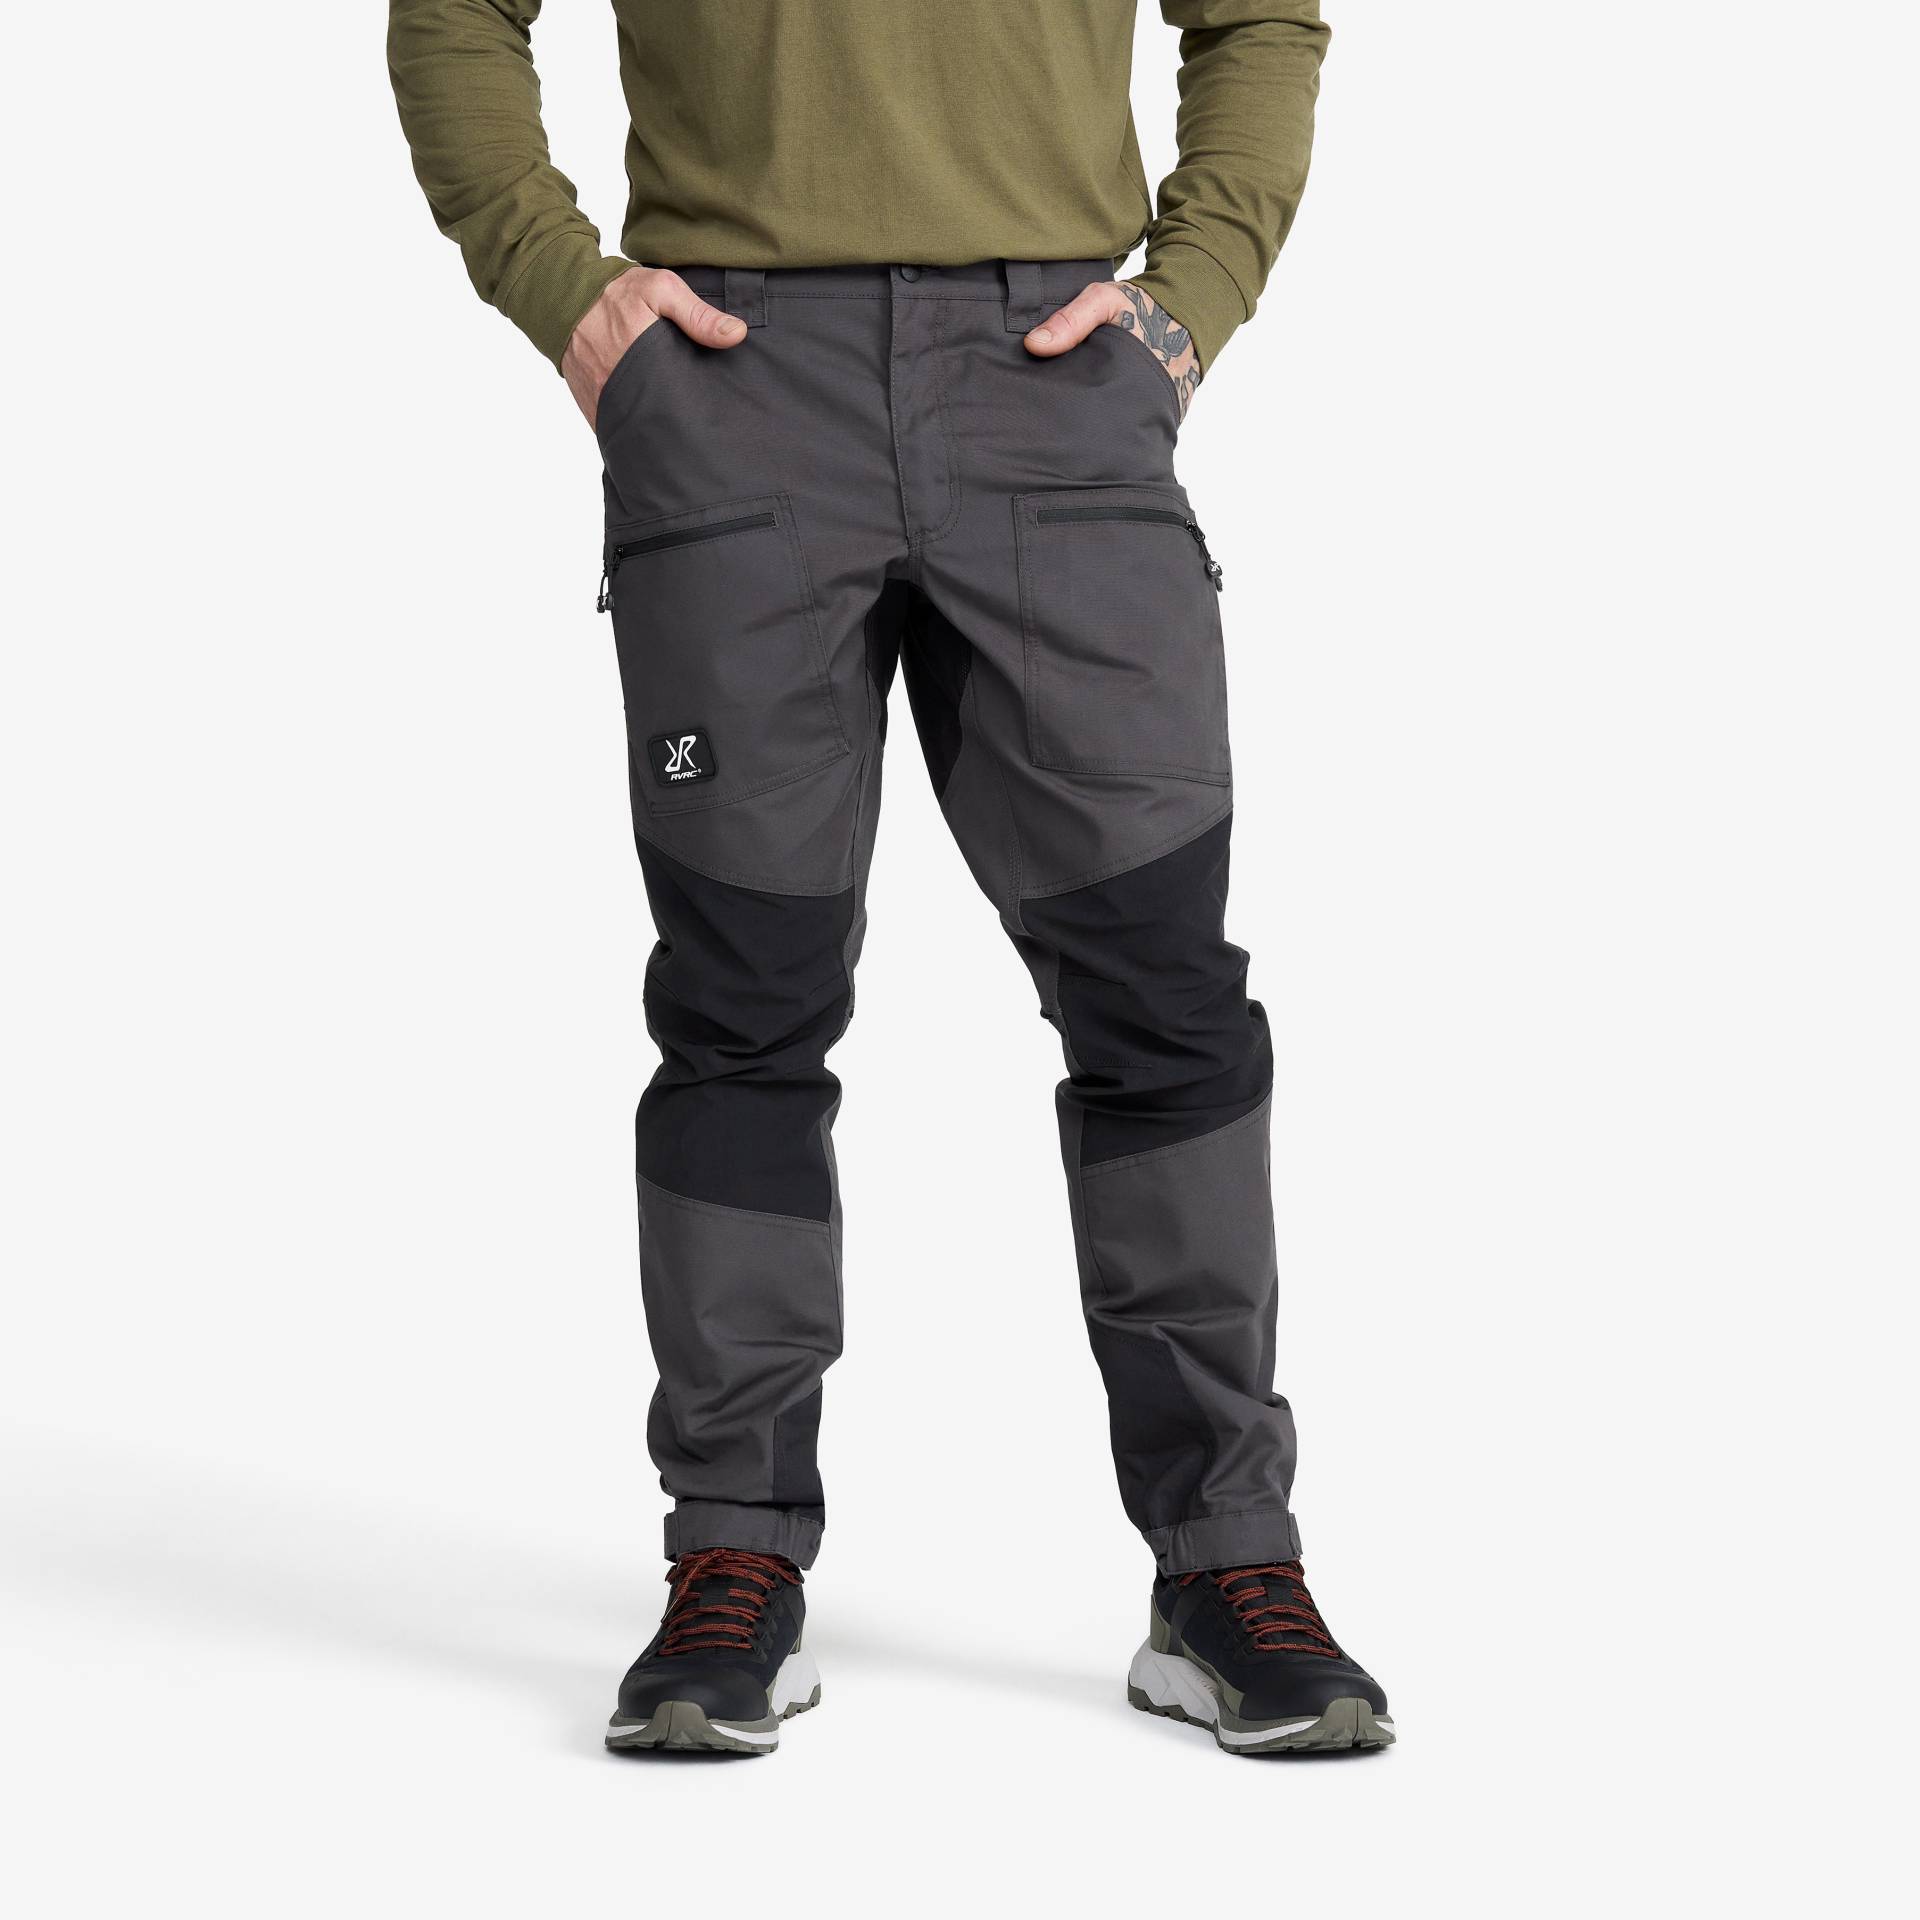 Nordwand Pro Pants Herren Anthracite, Größe:L - Outdoorhose, Wanderhose & Trekkinghose von RevolutionRace